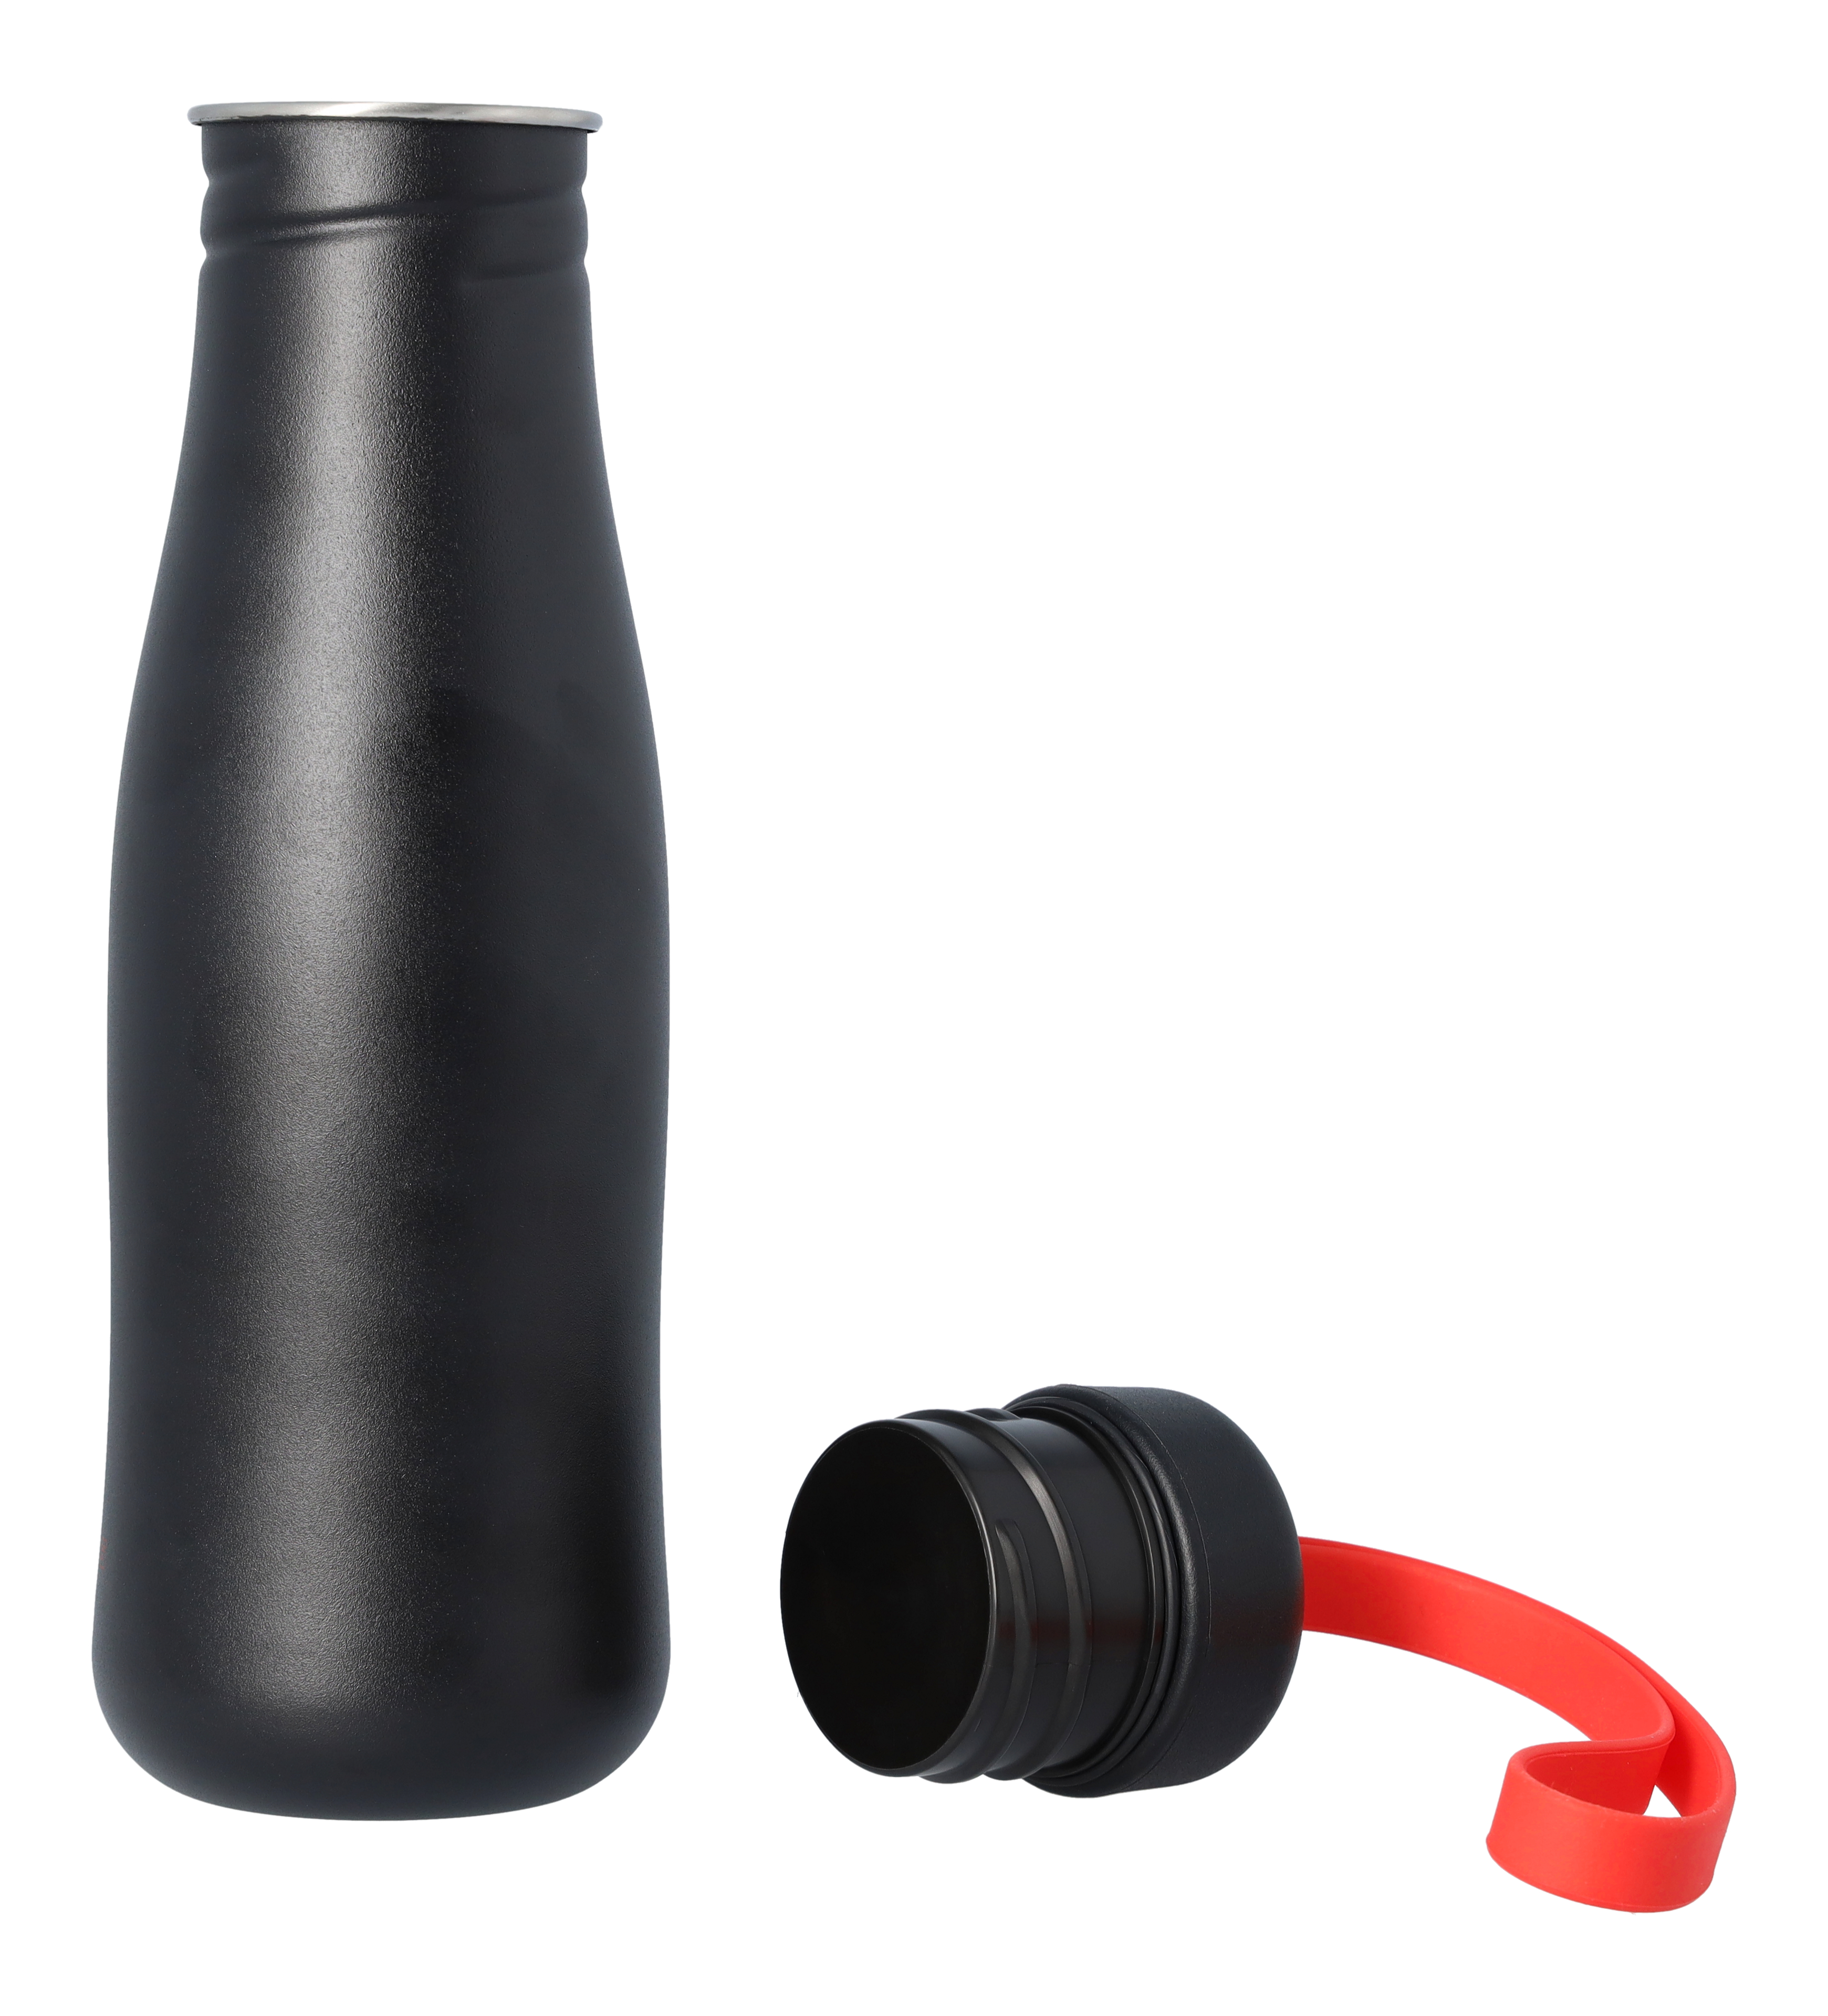 AMG Trinkflasche - schwarz, Edelstahl, eva solo, 700 ml